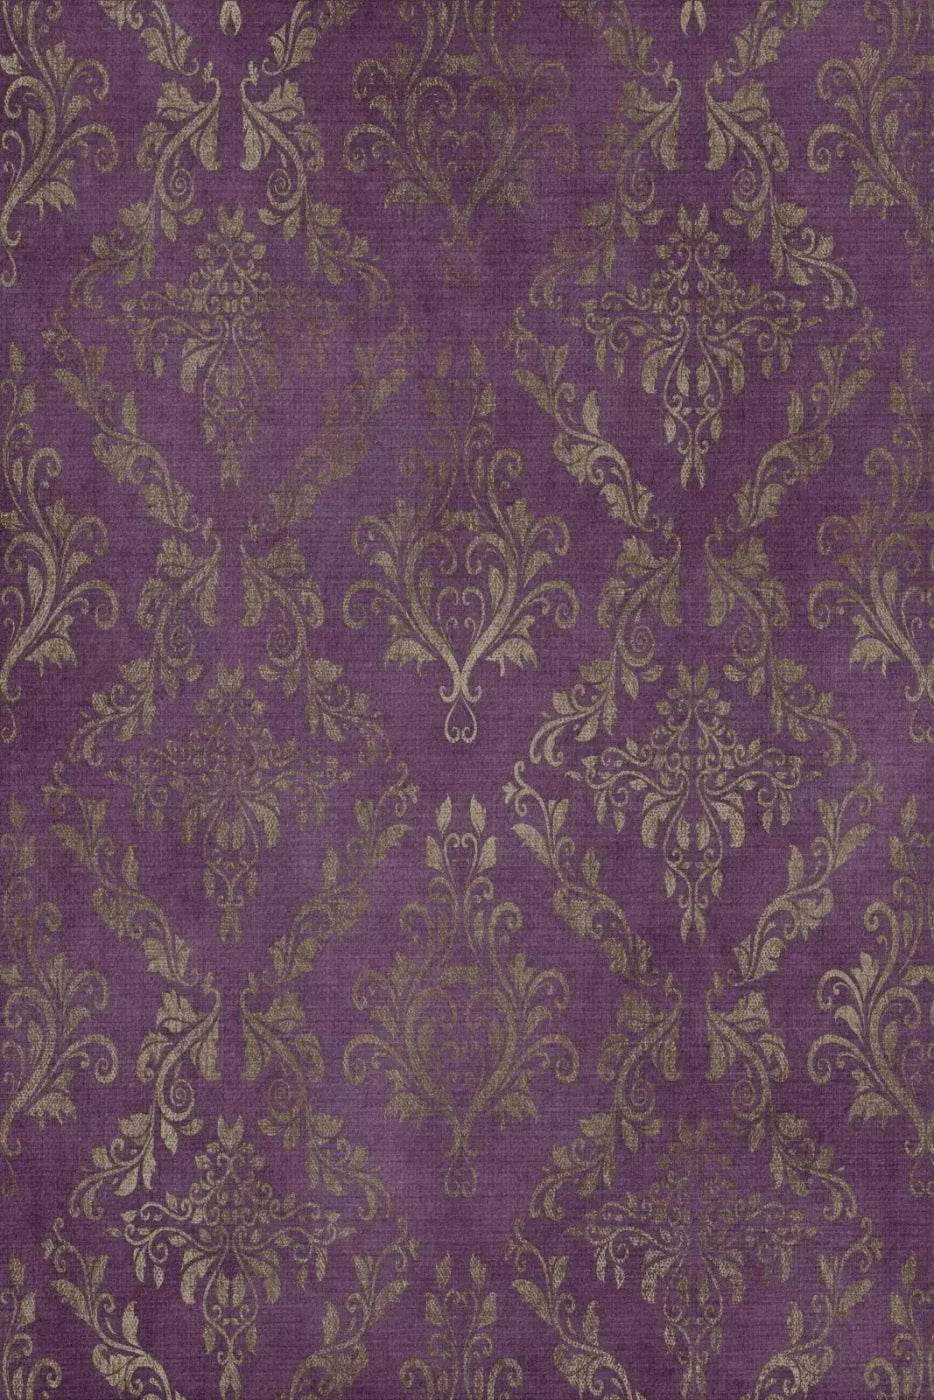 Allure Purple 4X5 Rubbermat Floor ( 48 X 60 Inch ) Backdrop